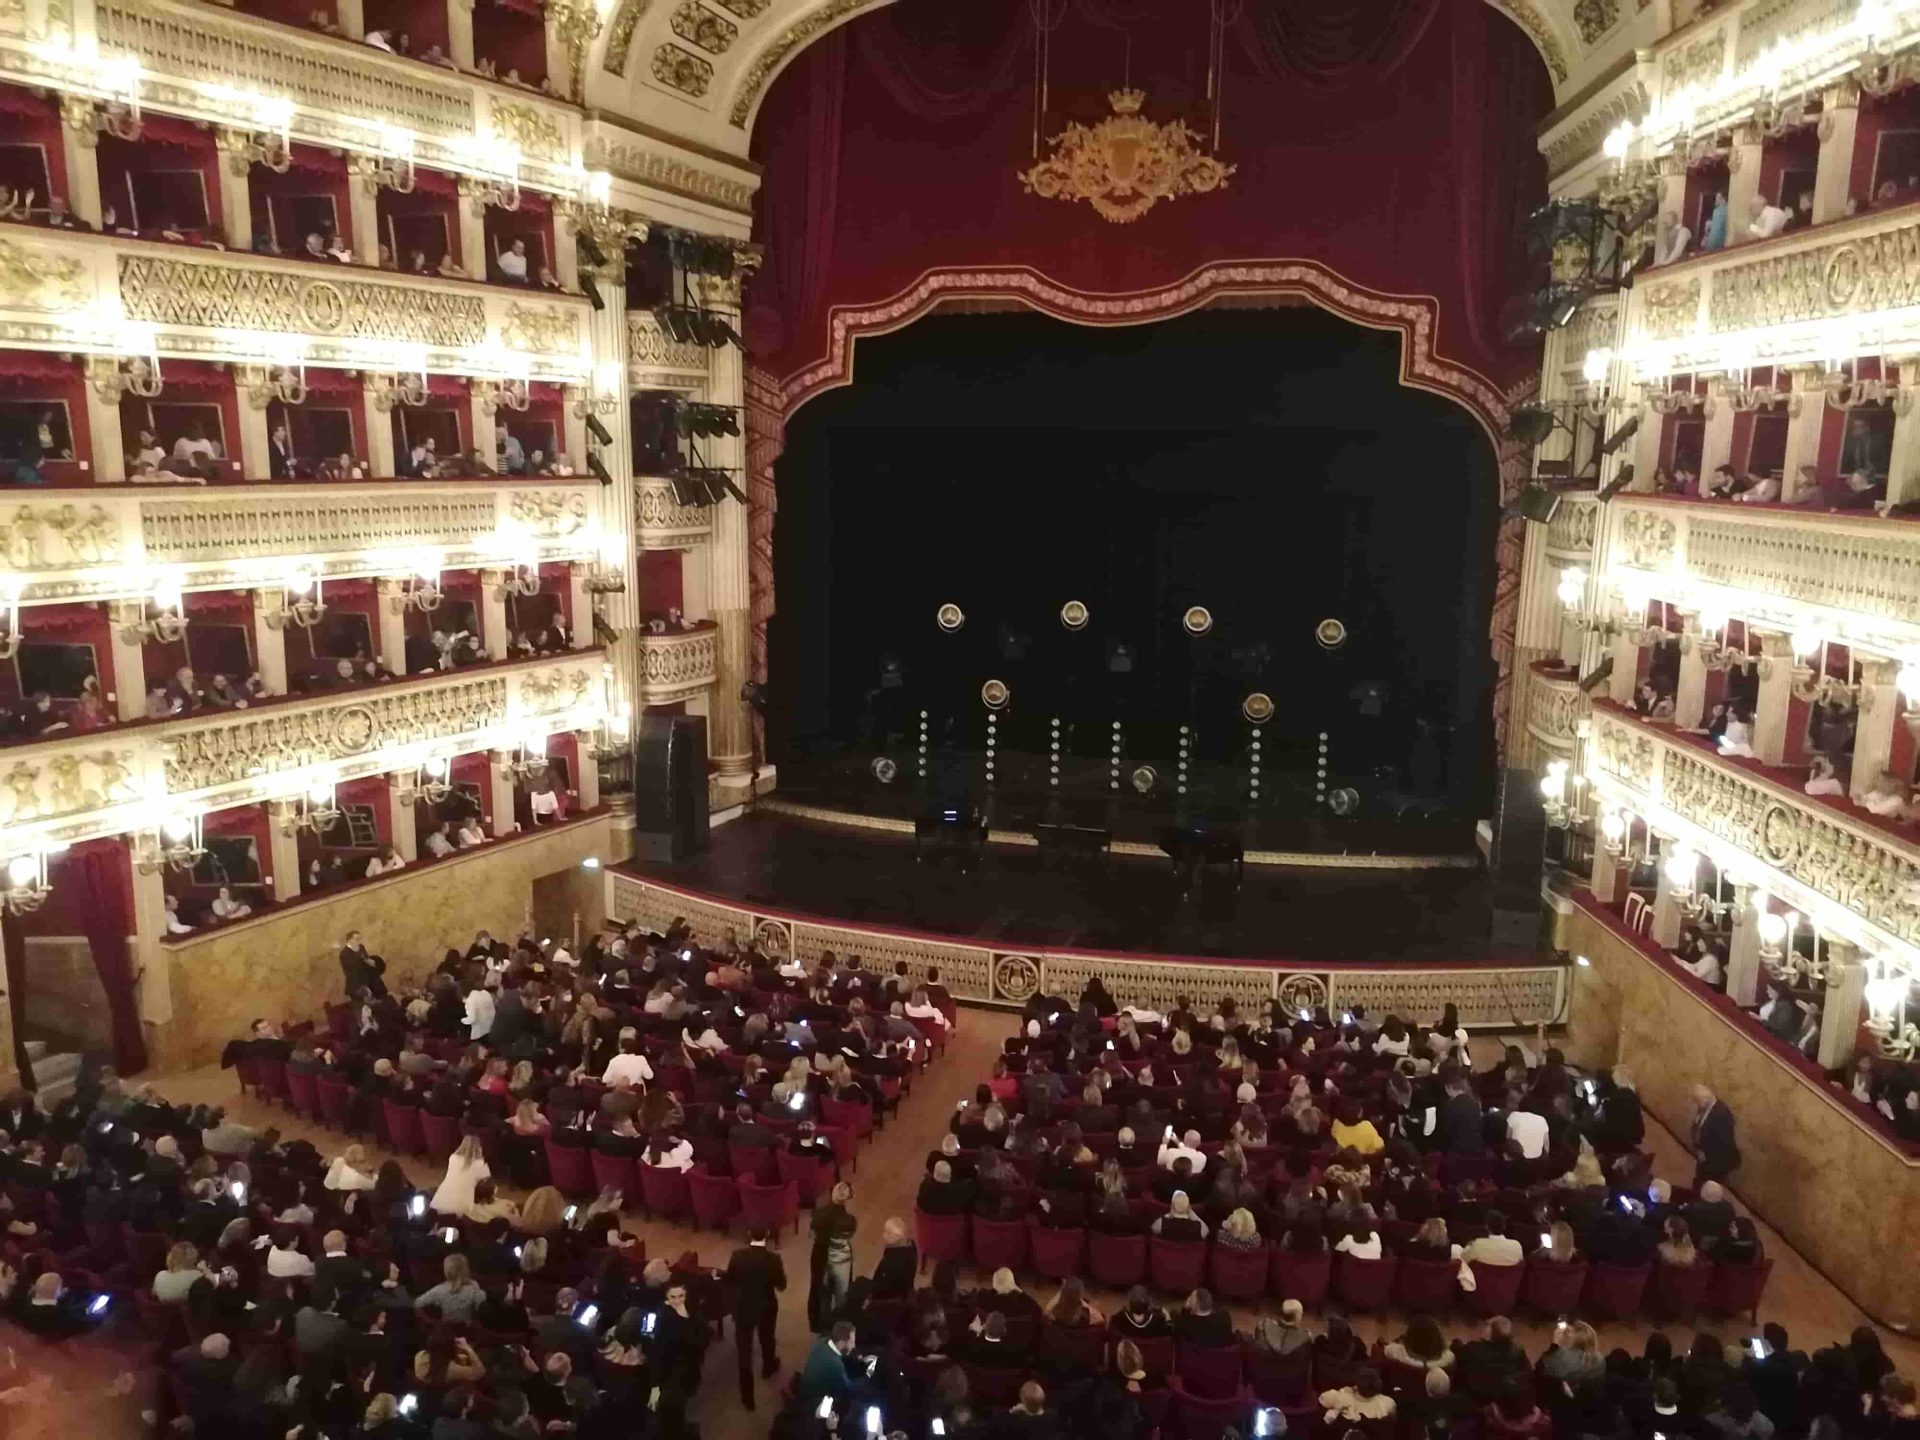 Al Teatro San Carlo continua l’Opera I Vespri siciliani di Giuseppe Verdi